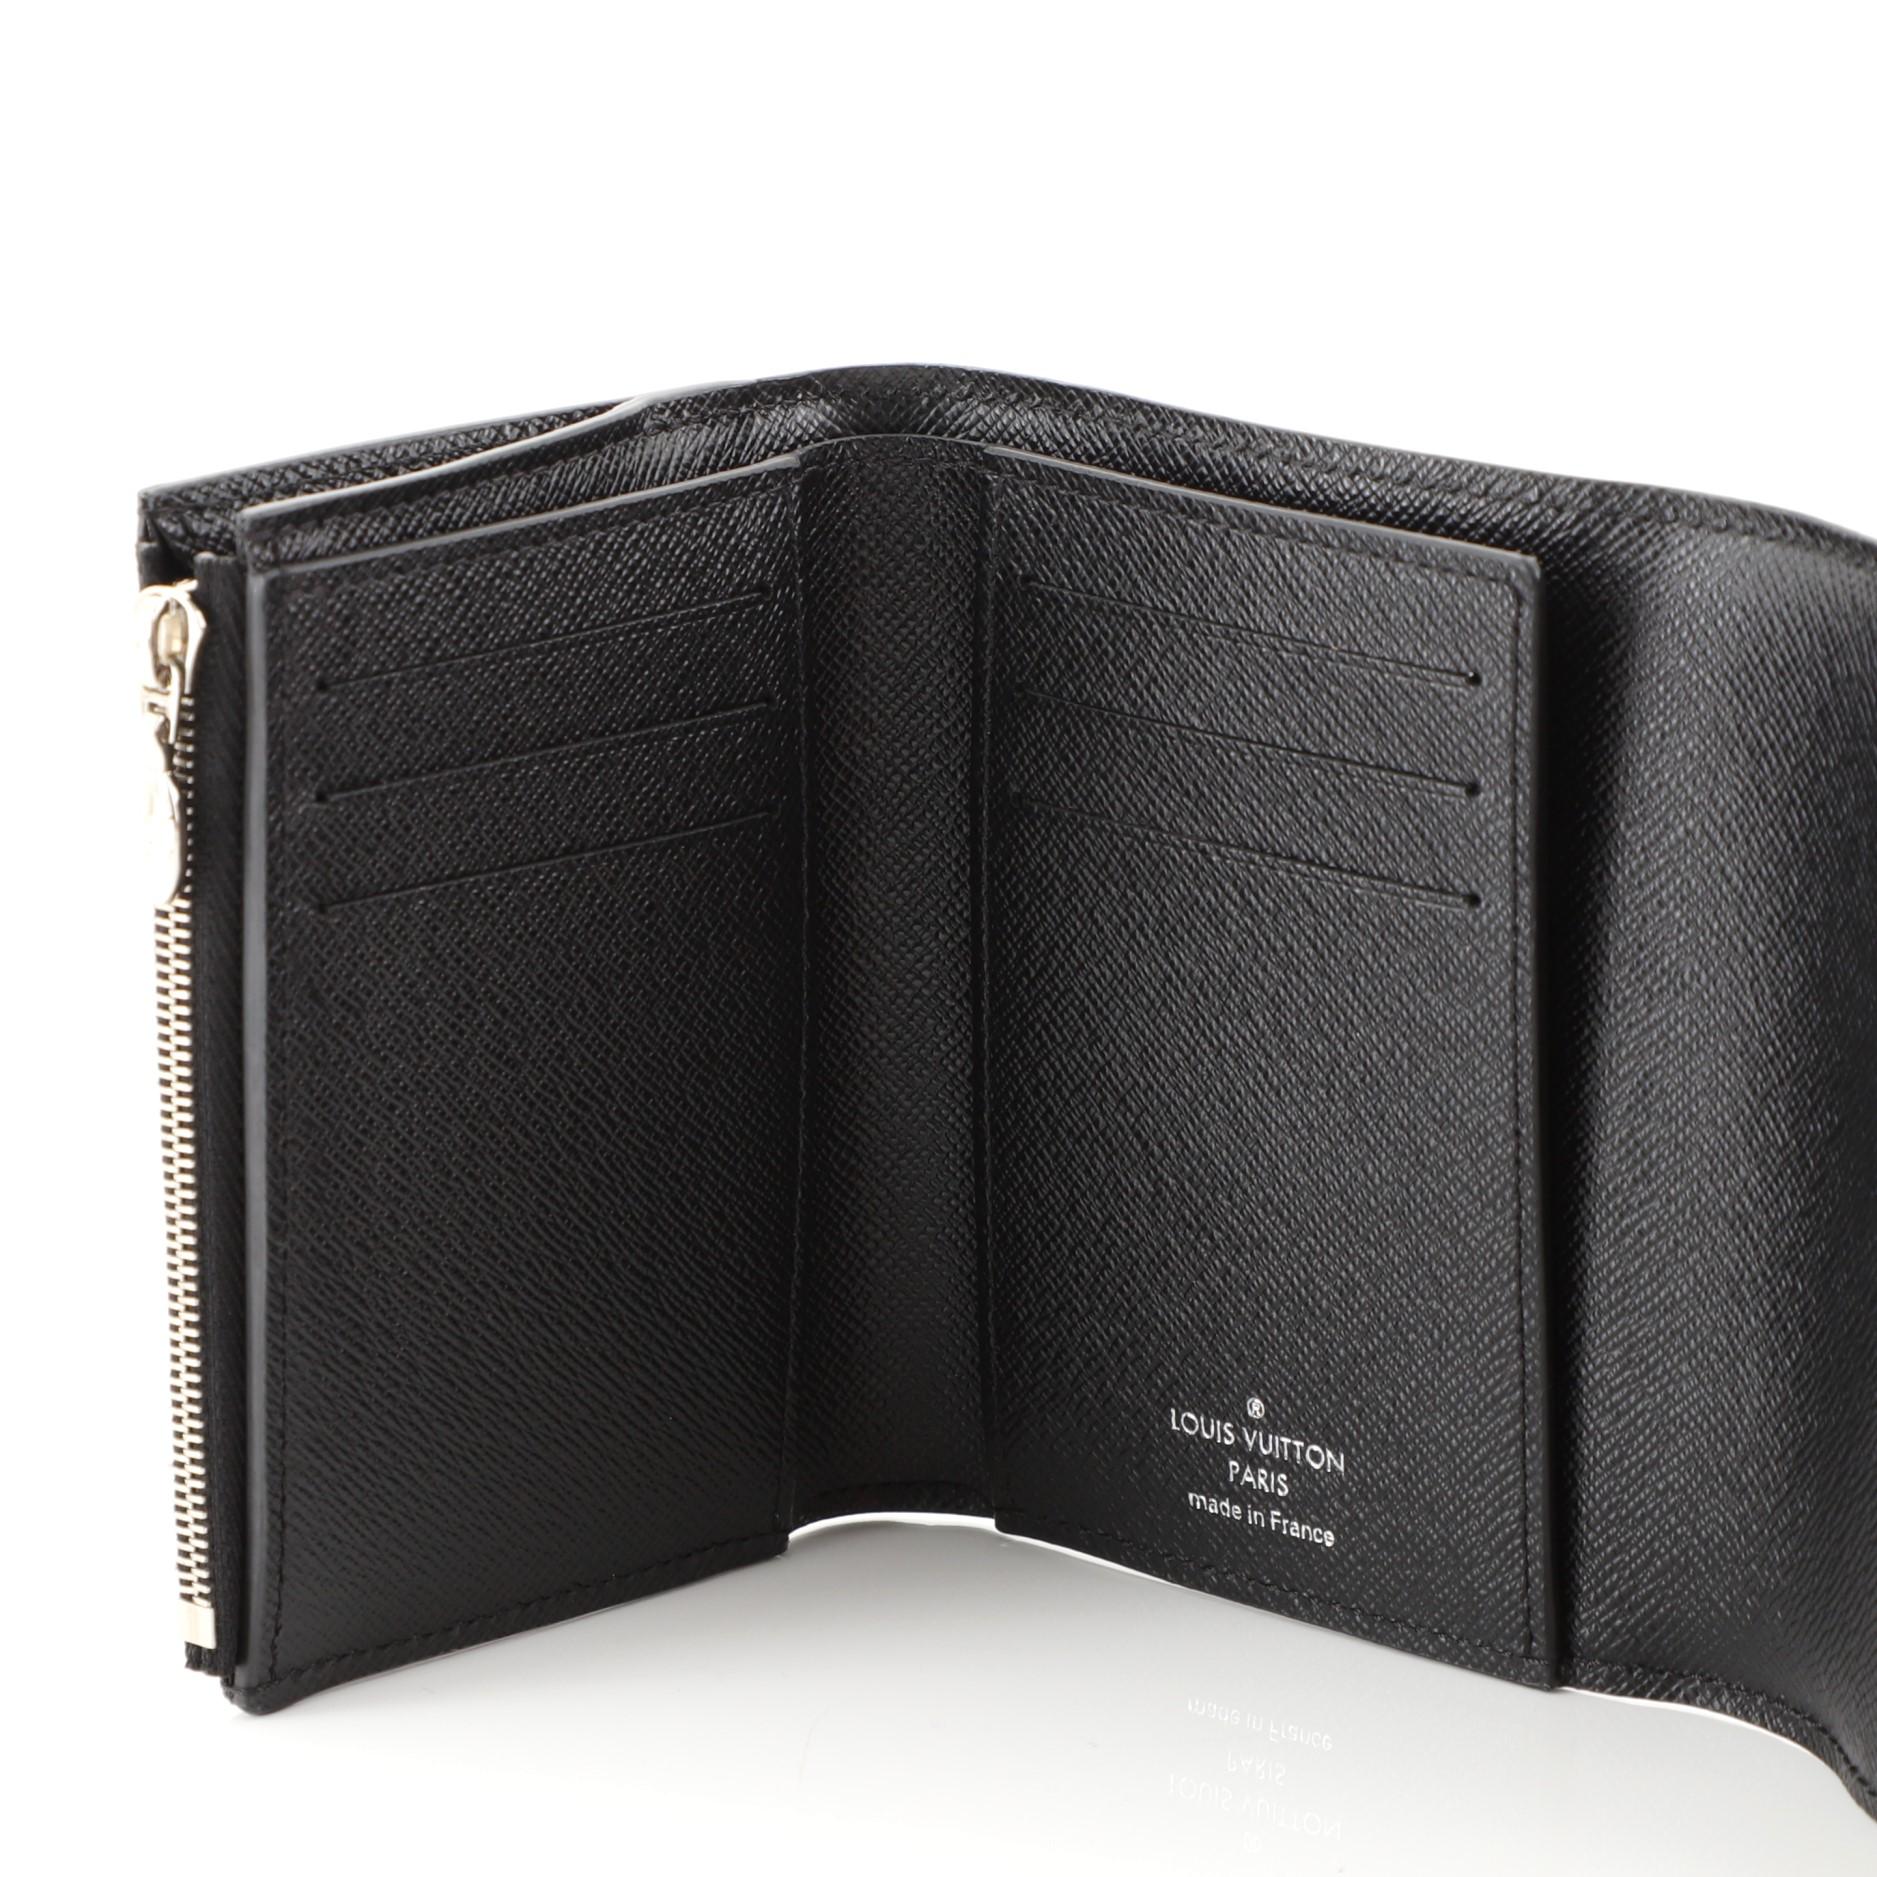 Louis Vuitton Twist Wallet Epi Leather Compact 1